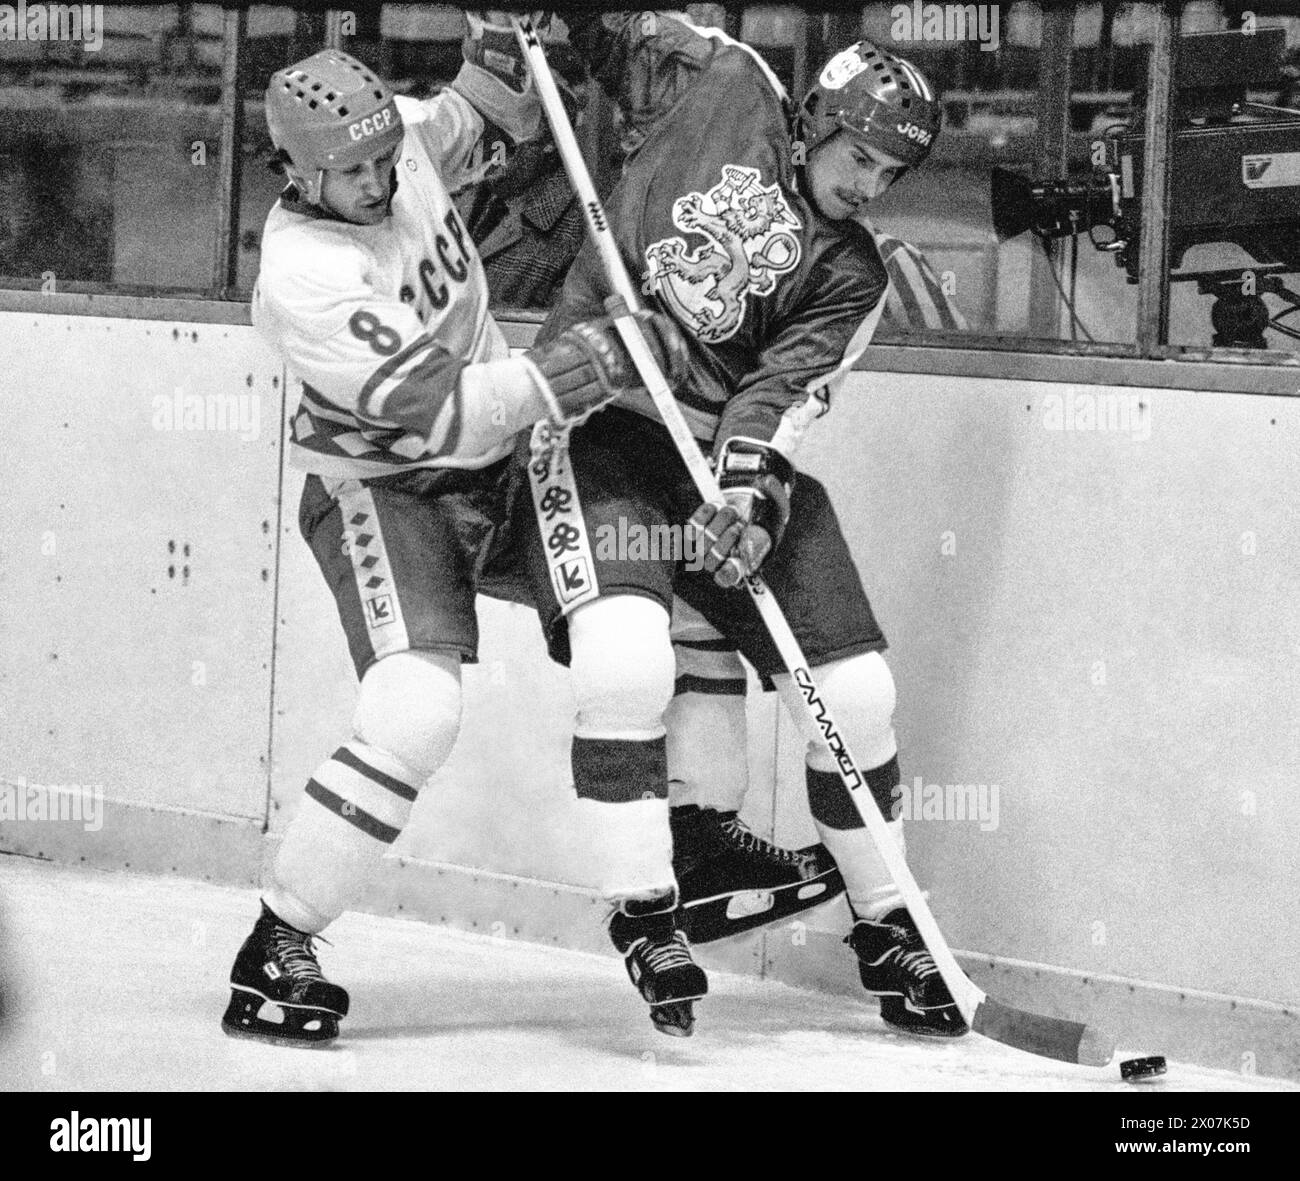 CHAMPIONNAT DU MONDE de hockey sur glace en Suède 1981Finlande-Soviétique ikari eloranta Finlande et Sergei Kapustin en combat aux planches Banque D'Images